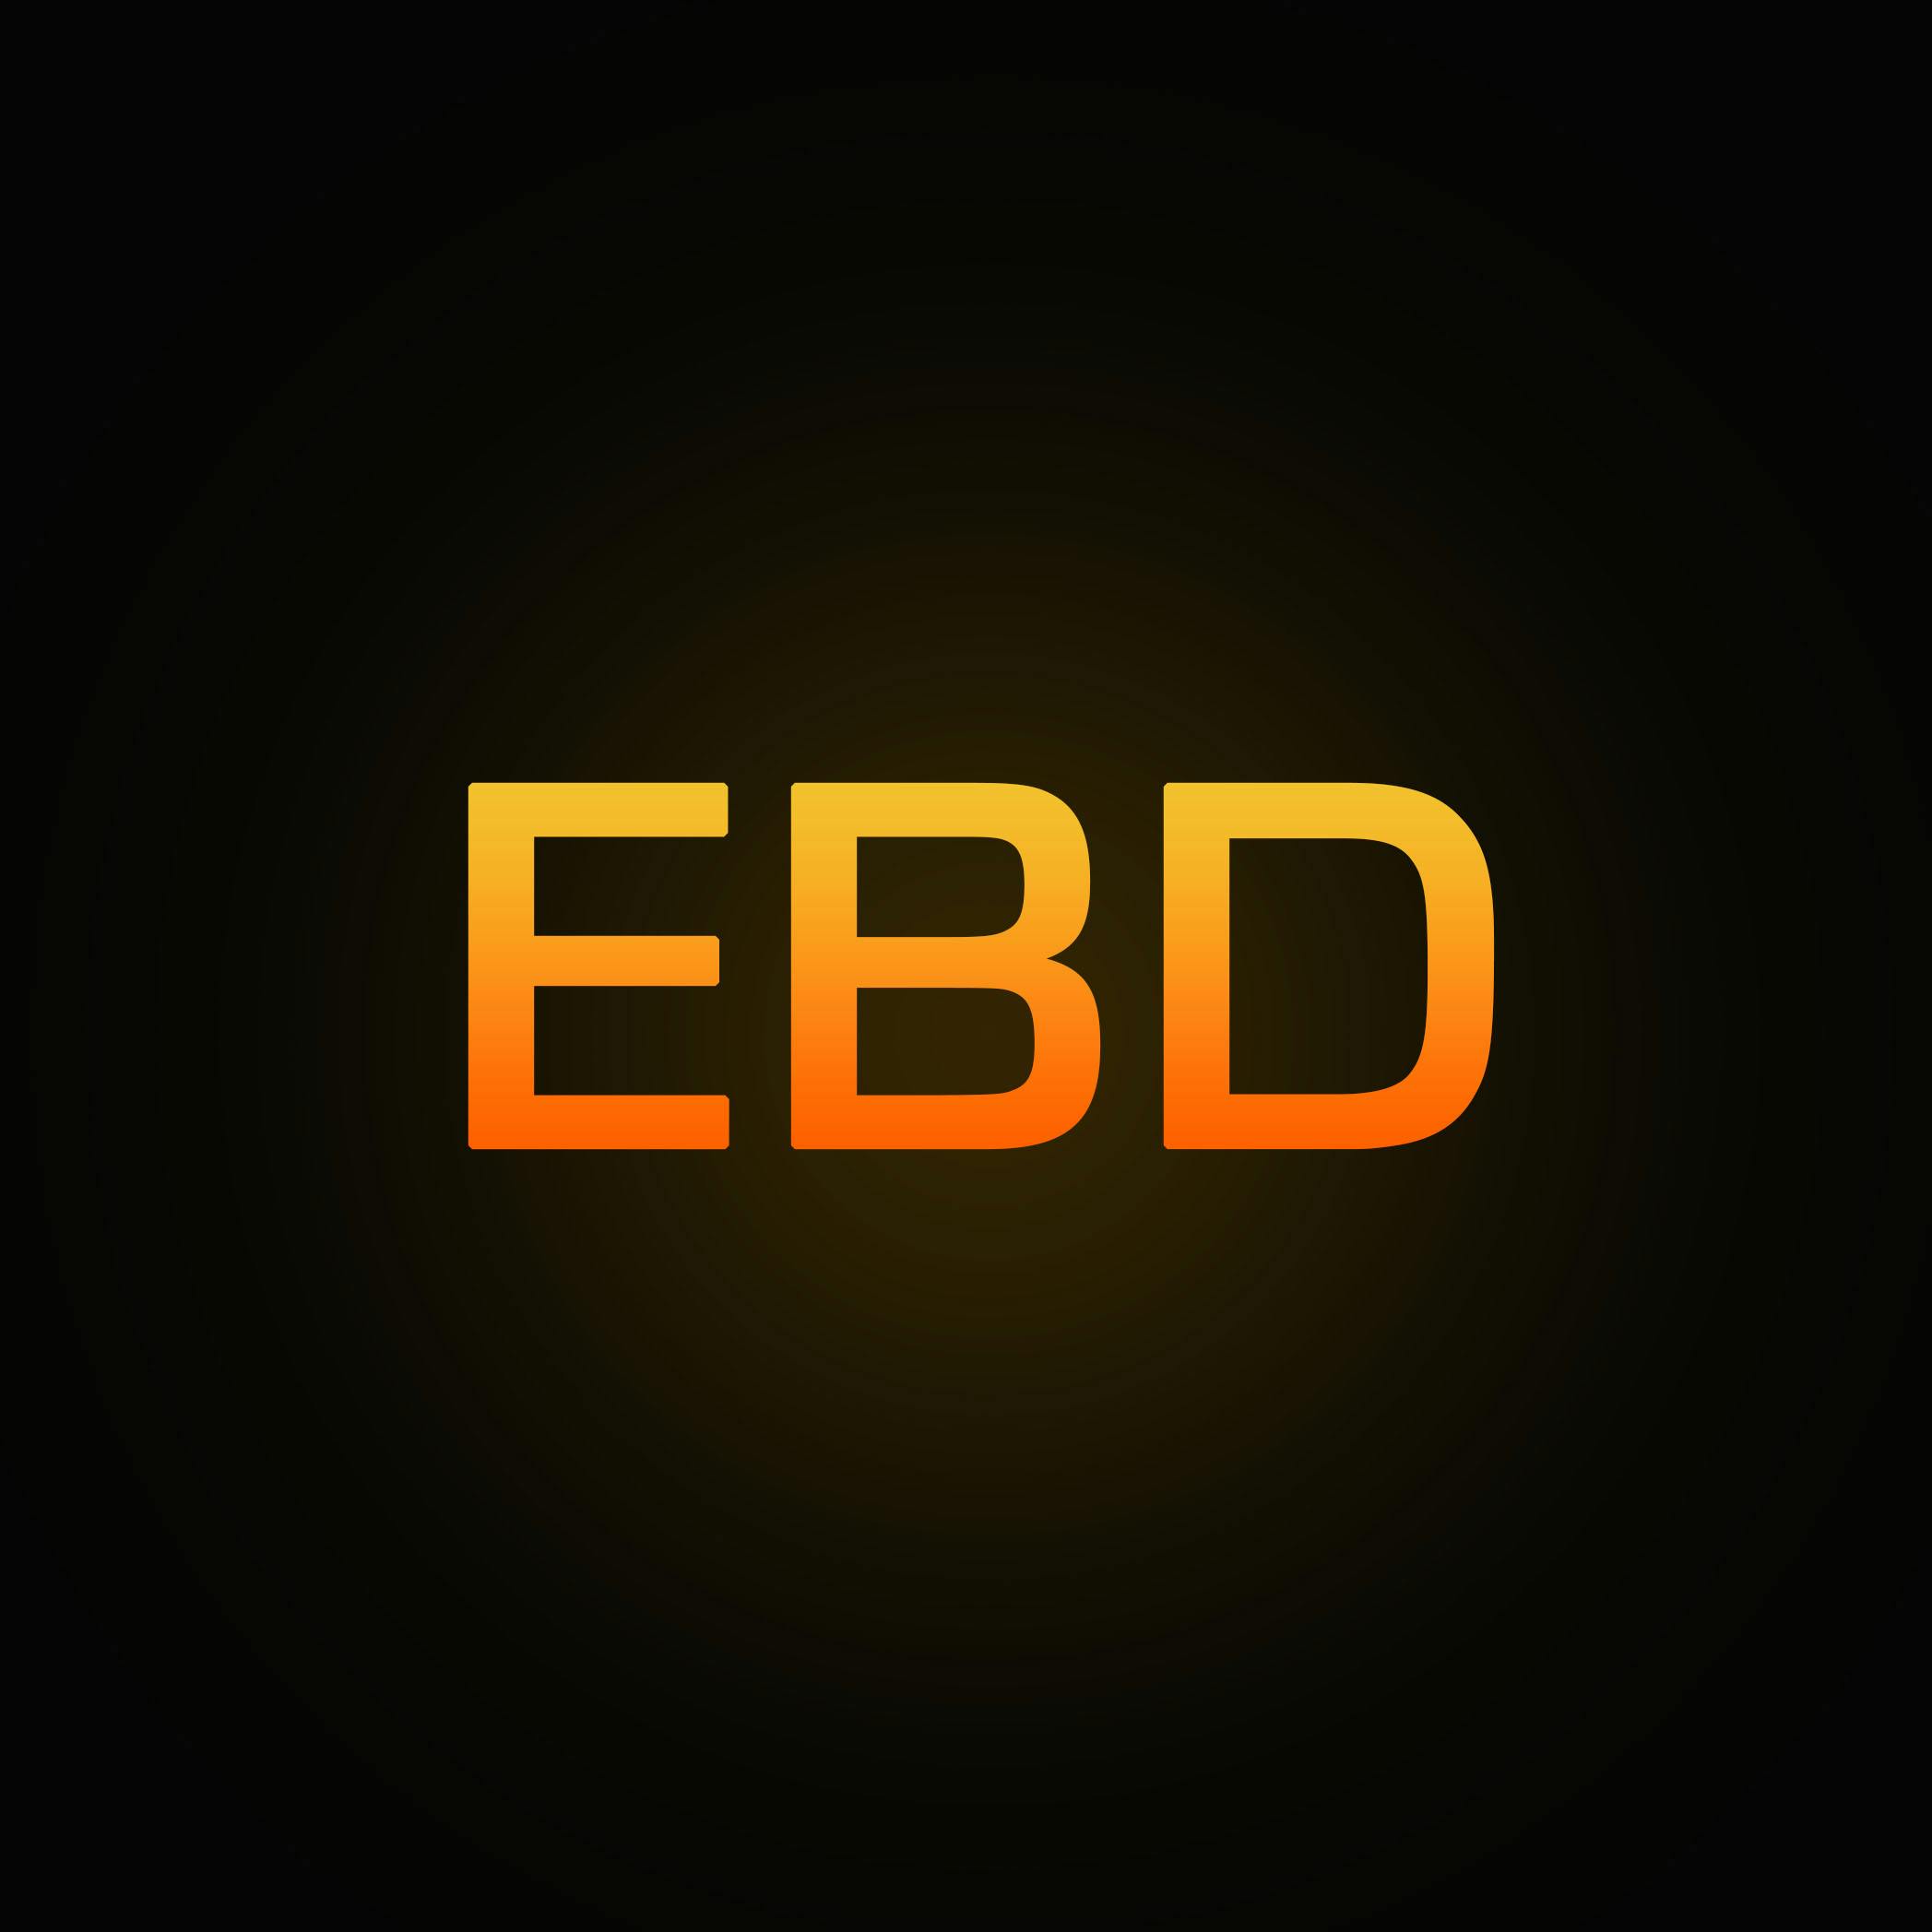 EBD warning light